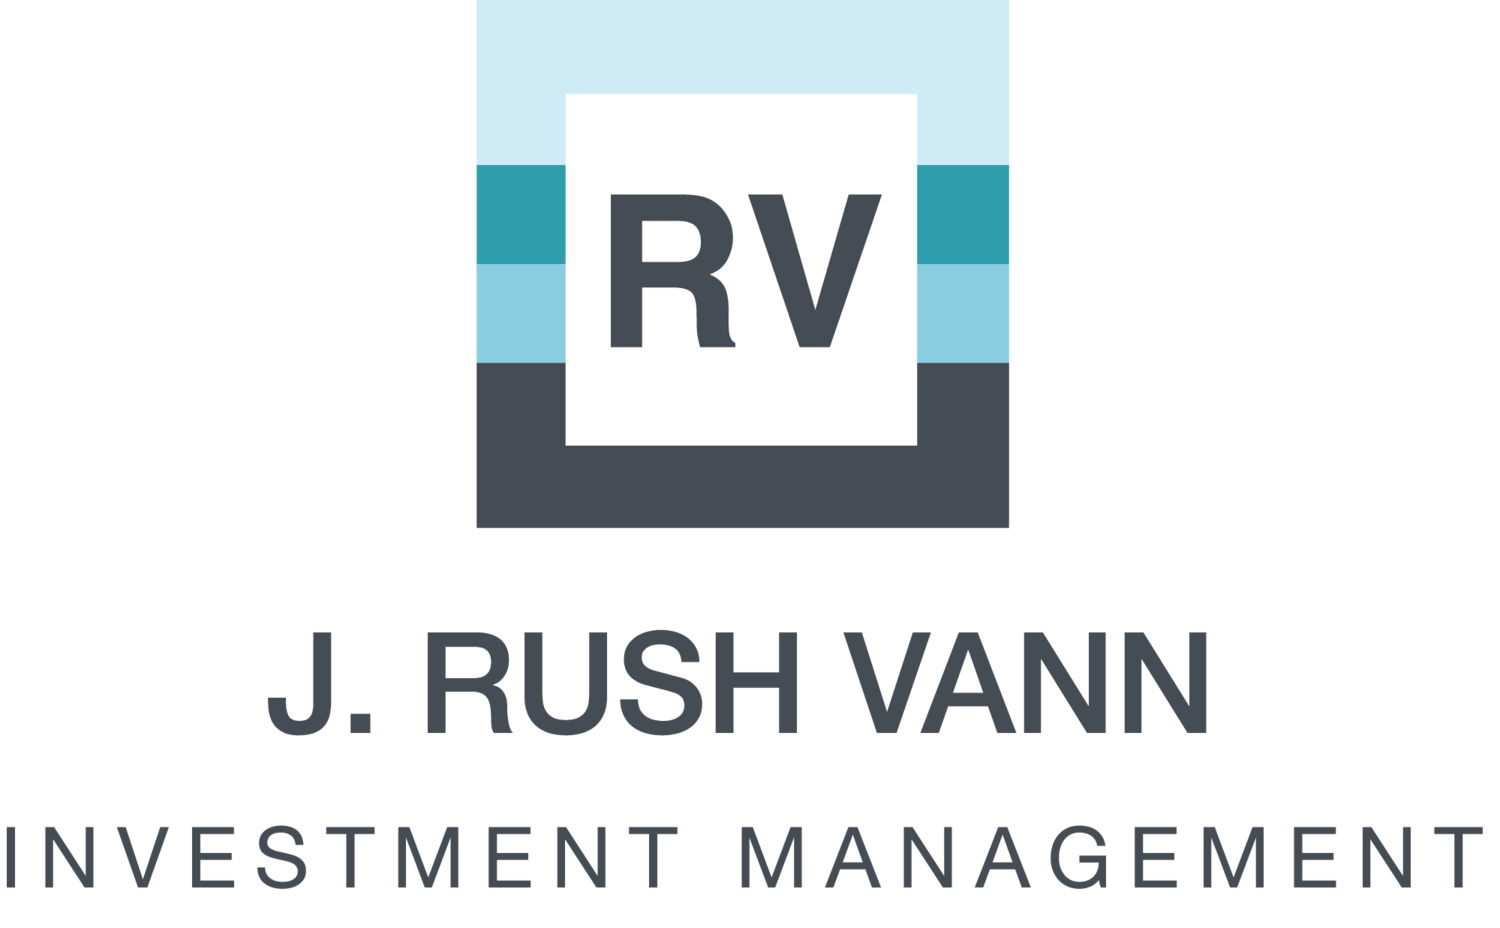 Vann's Logo - J. Rush Vann Investment Management